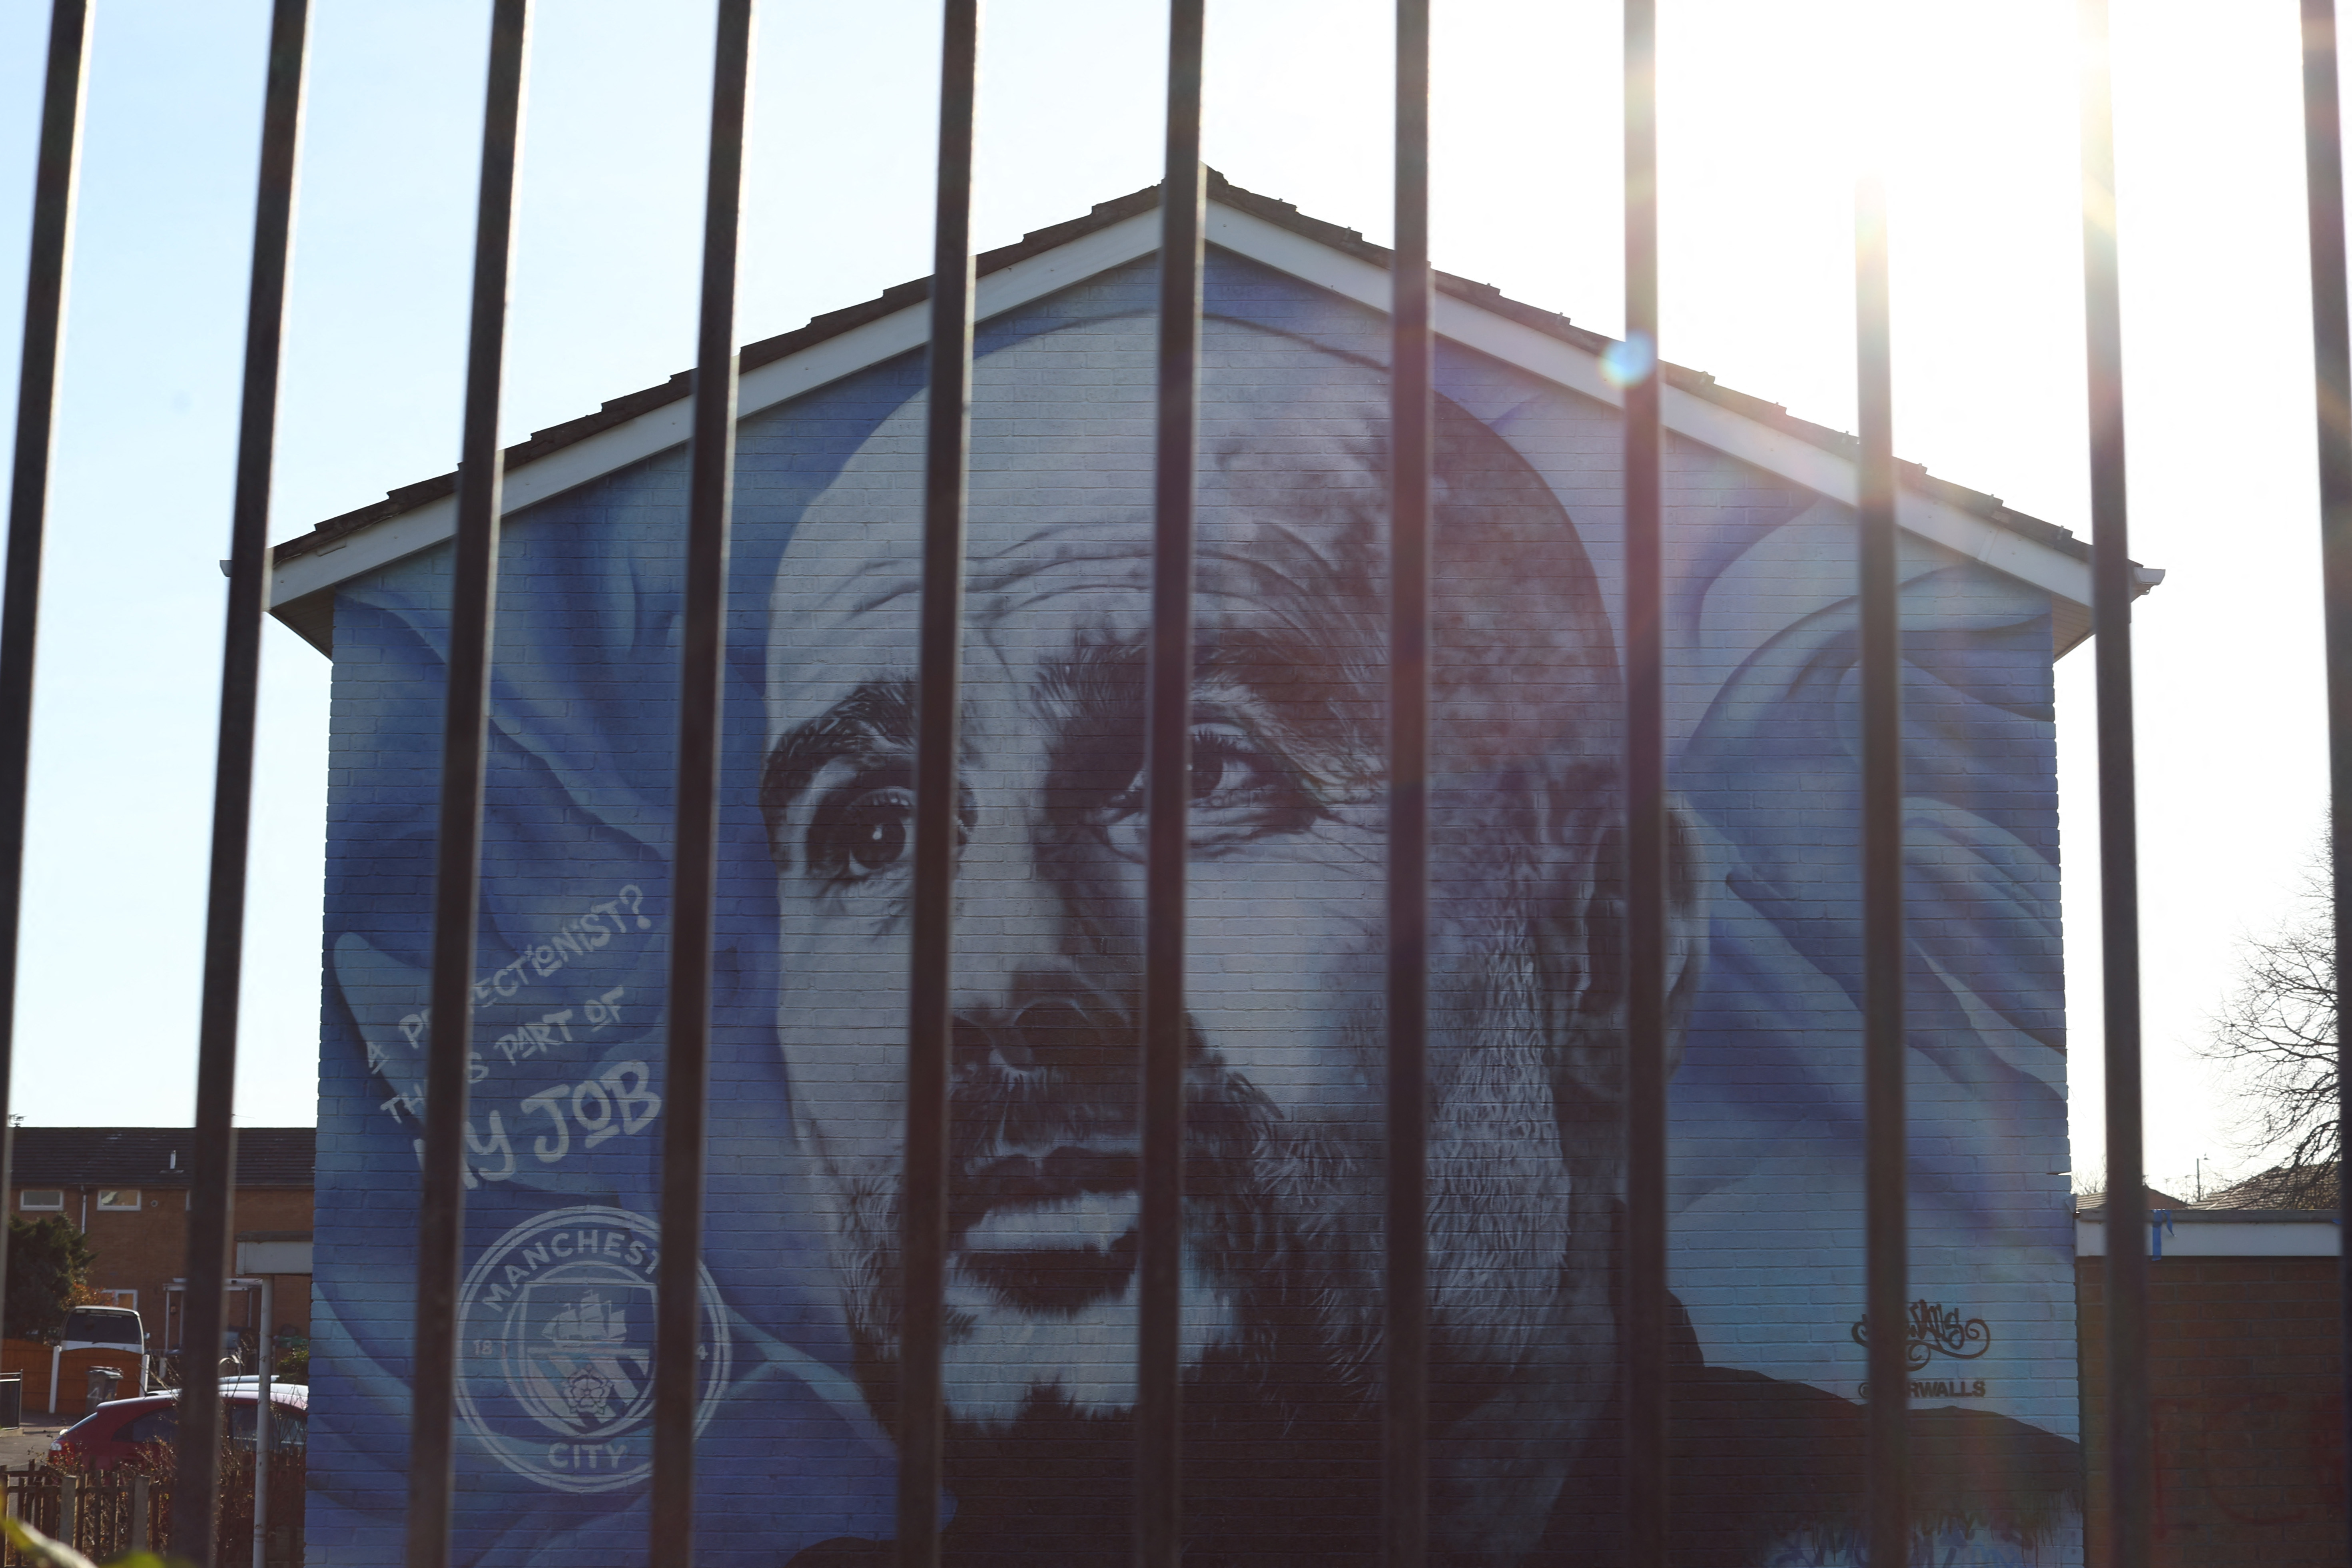 El Manchester City recurrió a varias irregularidades financieras durante la gestión árabe (REUTERS/Carl Recine)